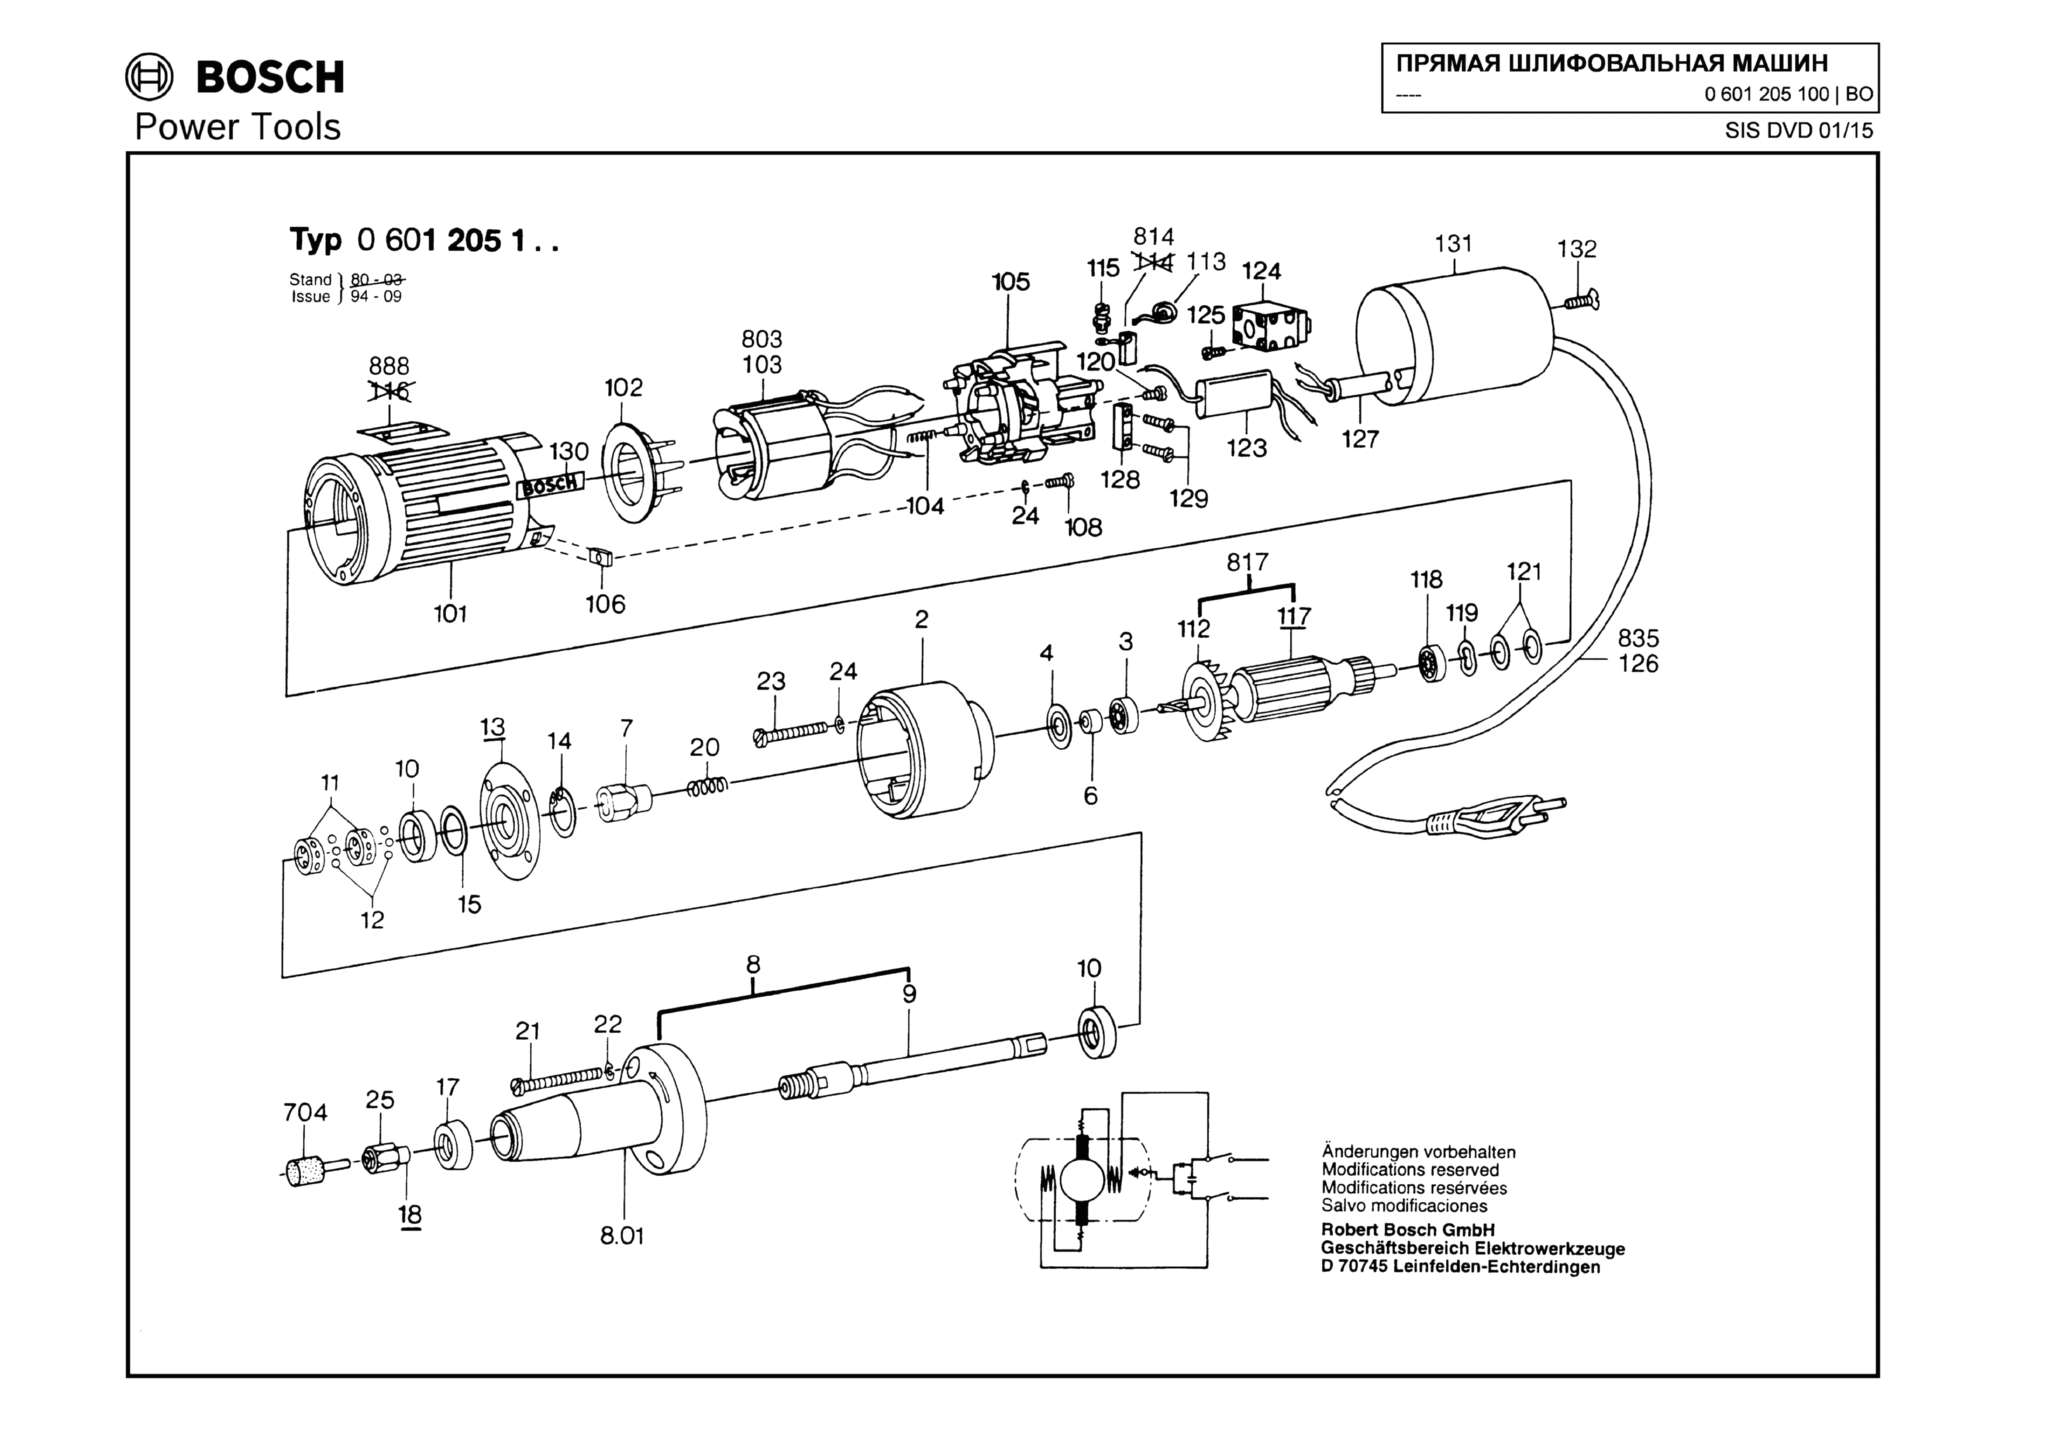 Запчасти, схема и деталировка Bosch (ТИП 0601205100)